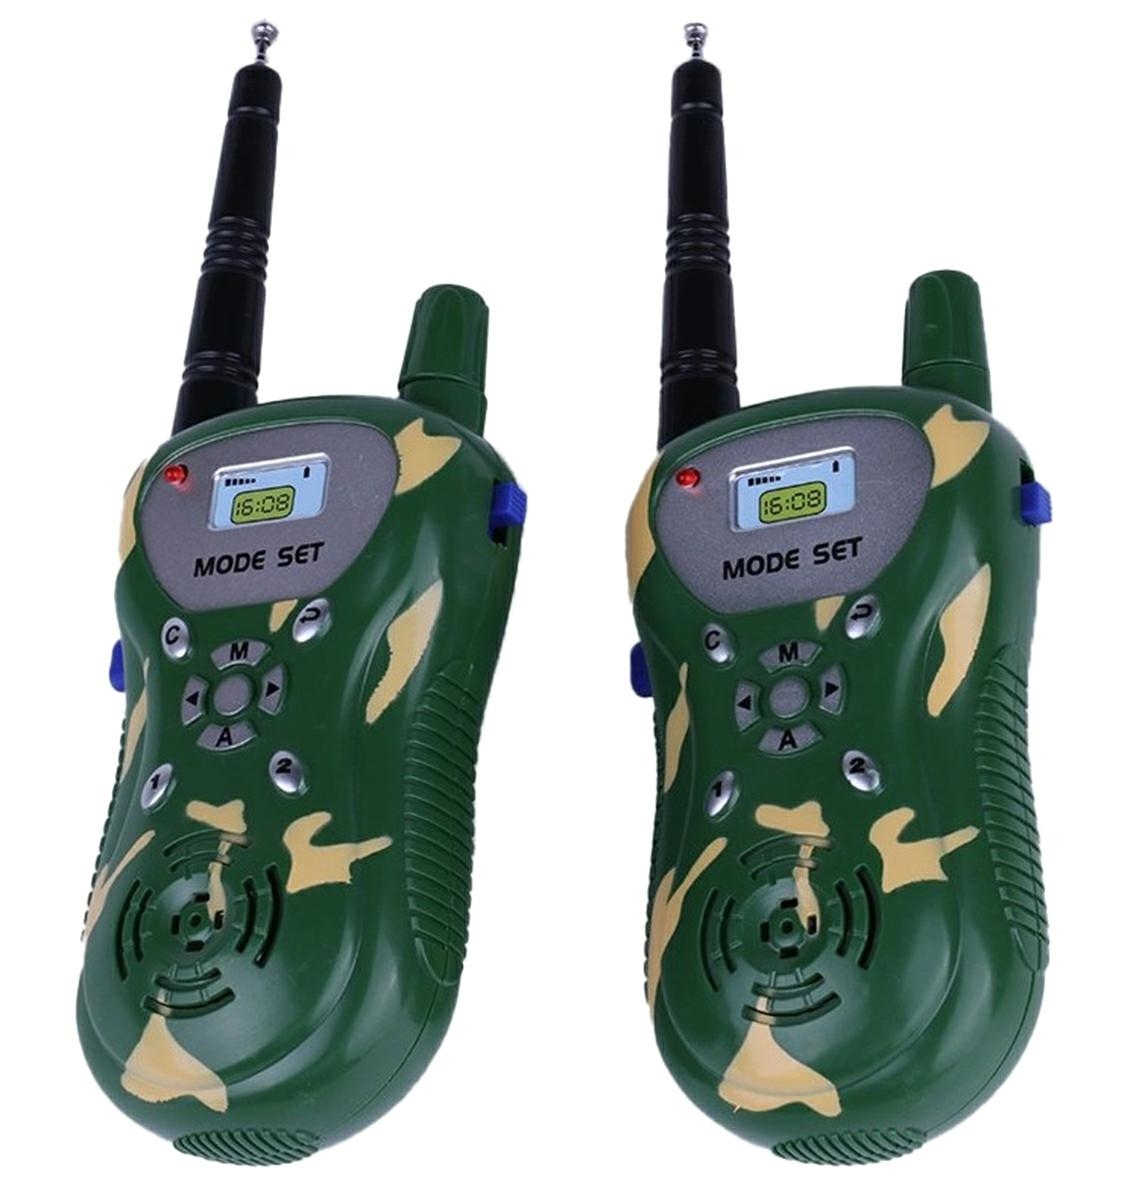 Set statie walkie talkie, semnal pana la 100 de metri, cu baterii incluse, verde camuflaj